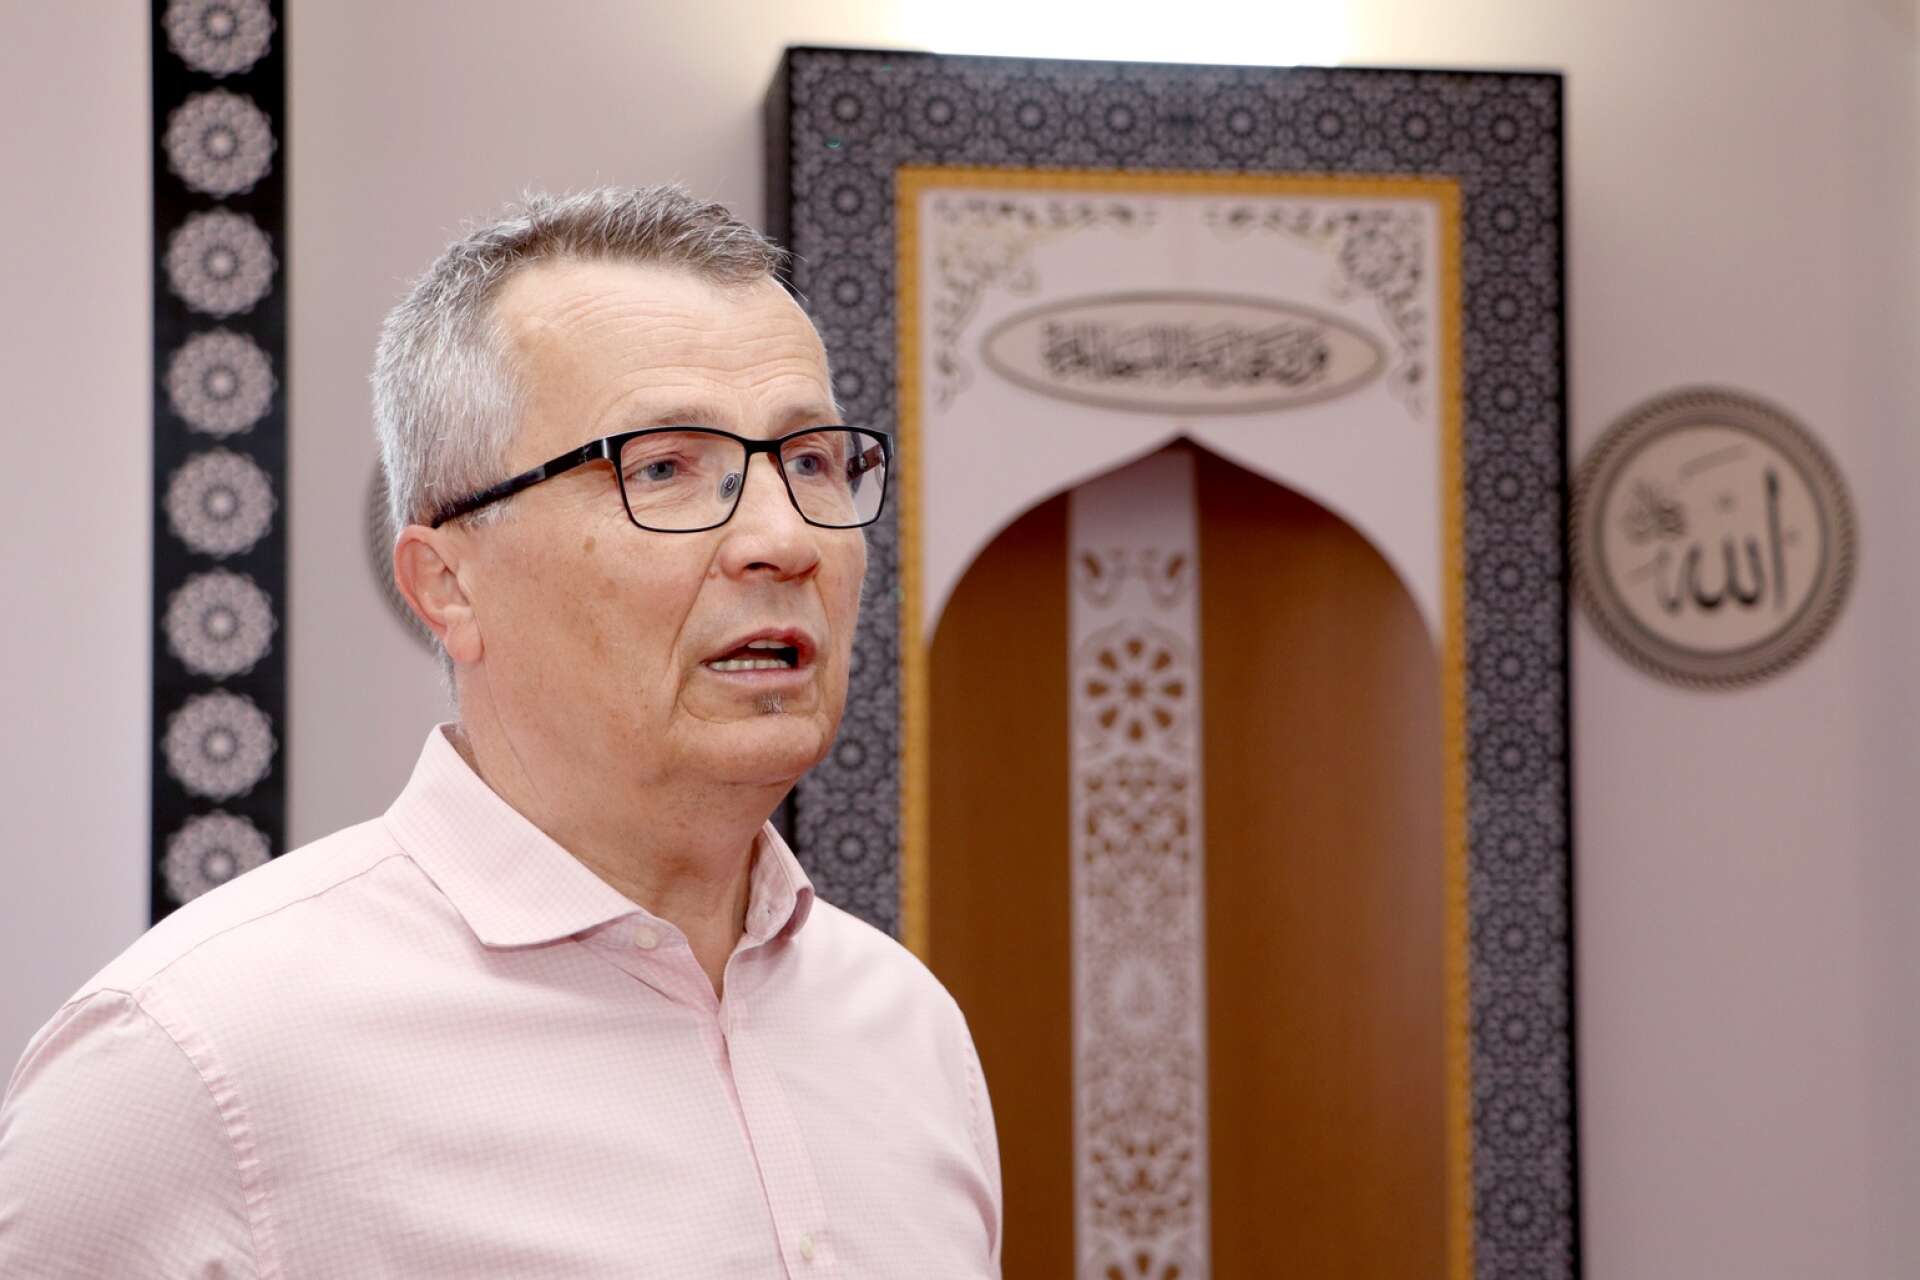 Smajo Sahat, imam och ordförande i stiftelsen Skövde moské, reagerade starkt över SD-ledaren Jimmie Åkessons utspel i helgen. ”Det är svårt att ens ta in att ledaren för landets nästa största parti uttrycker en så tydlig islamofobi”.